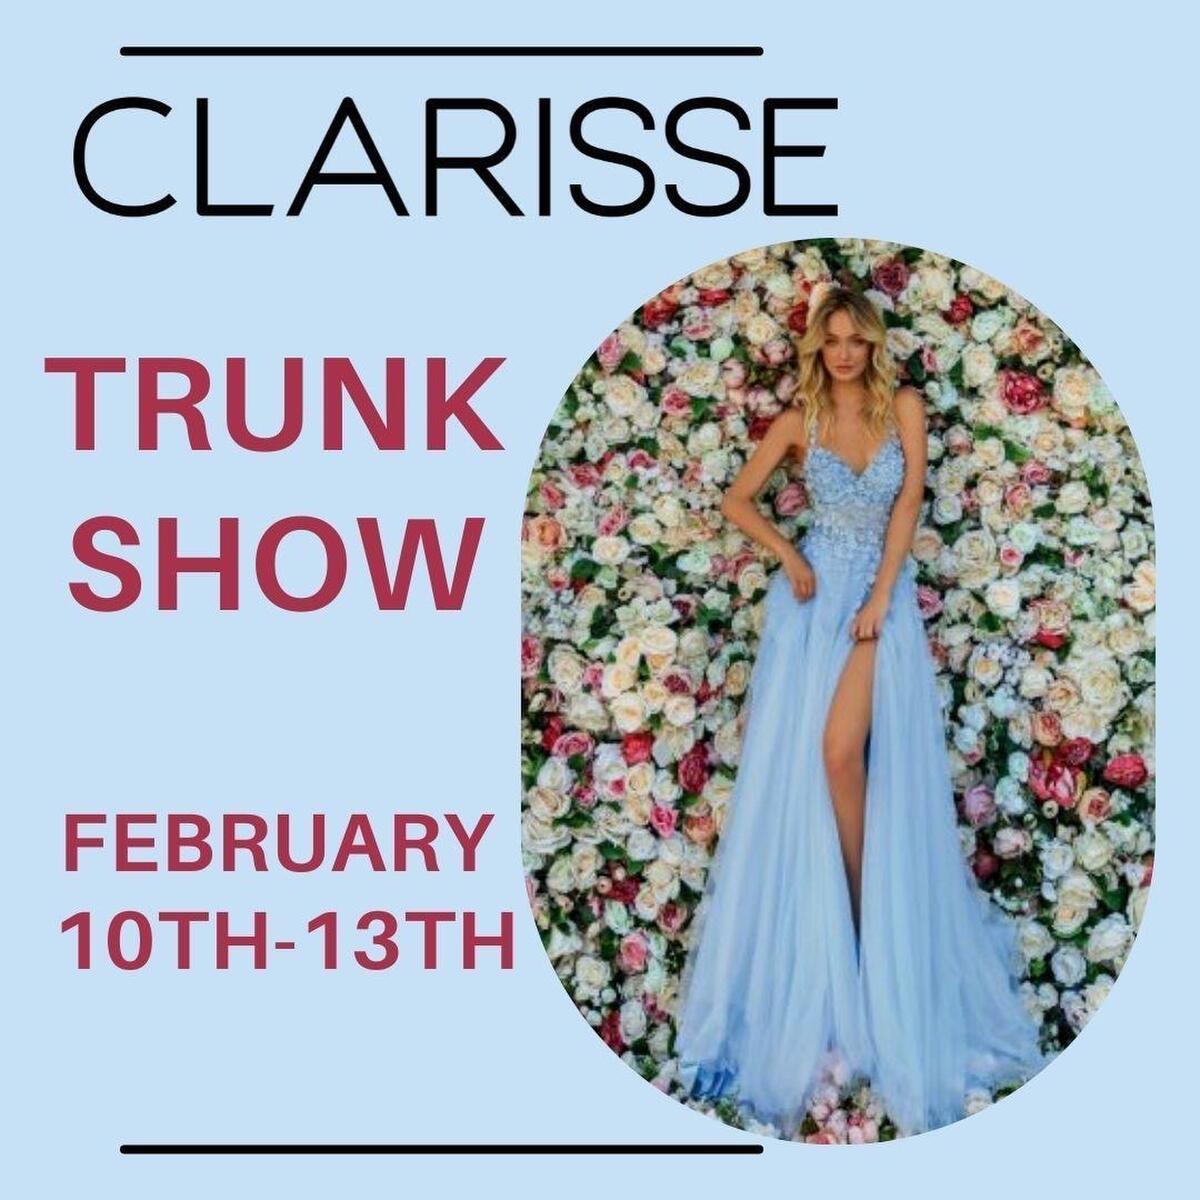 clarisse trunk show